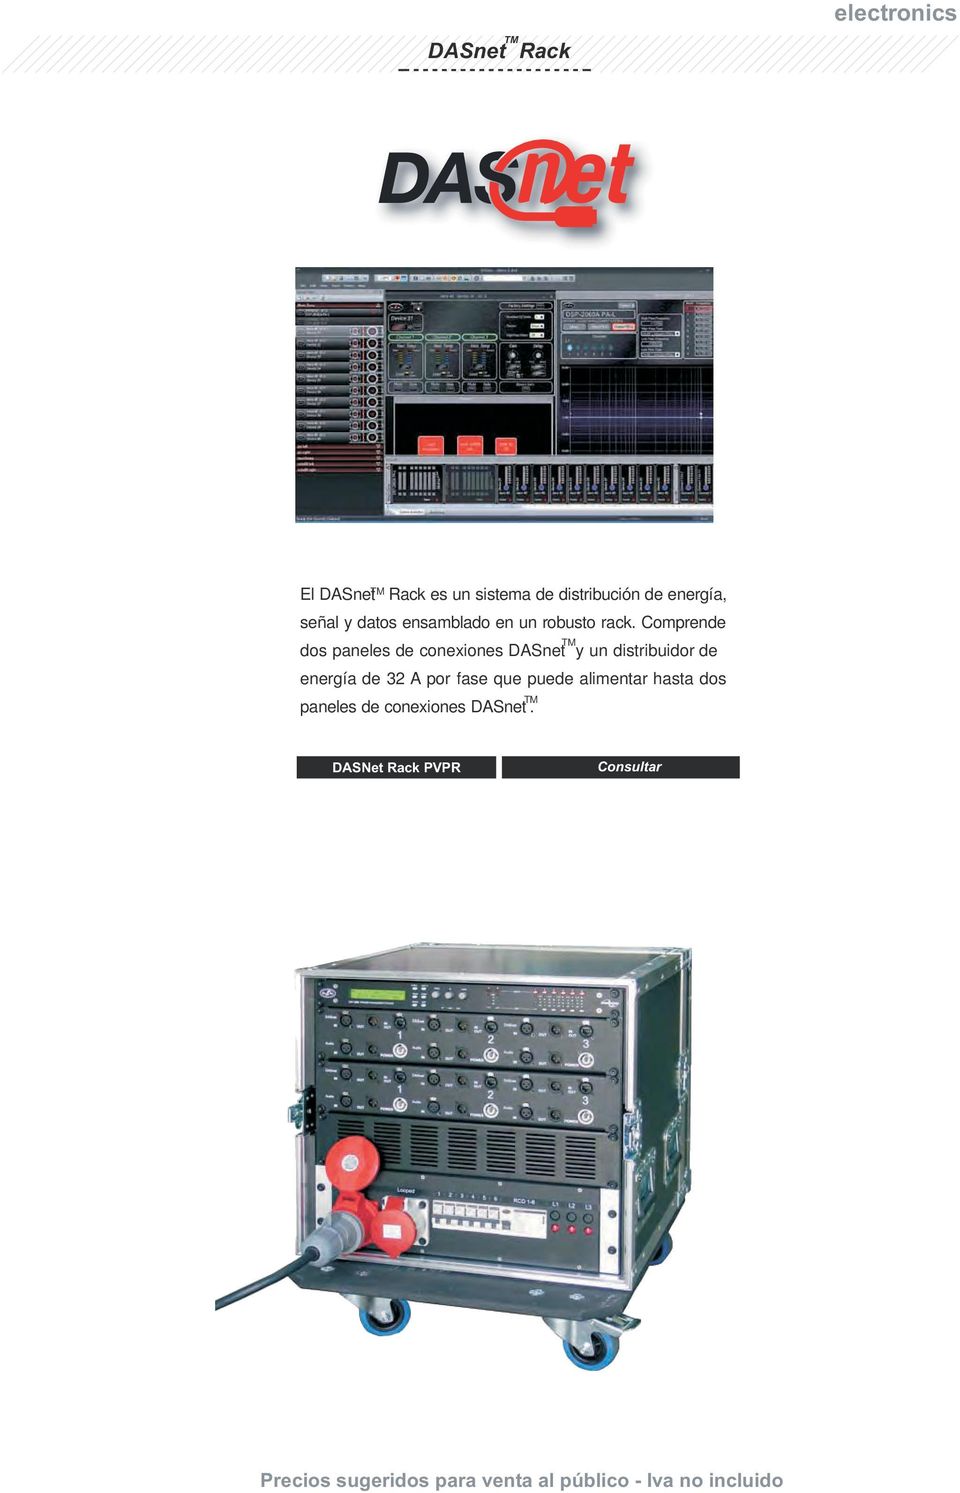 Comprende dos paneles de conexiones DASnet TM y un distribuidor de energía